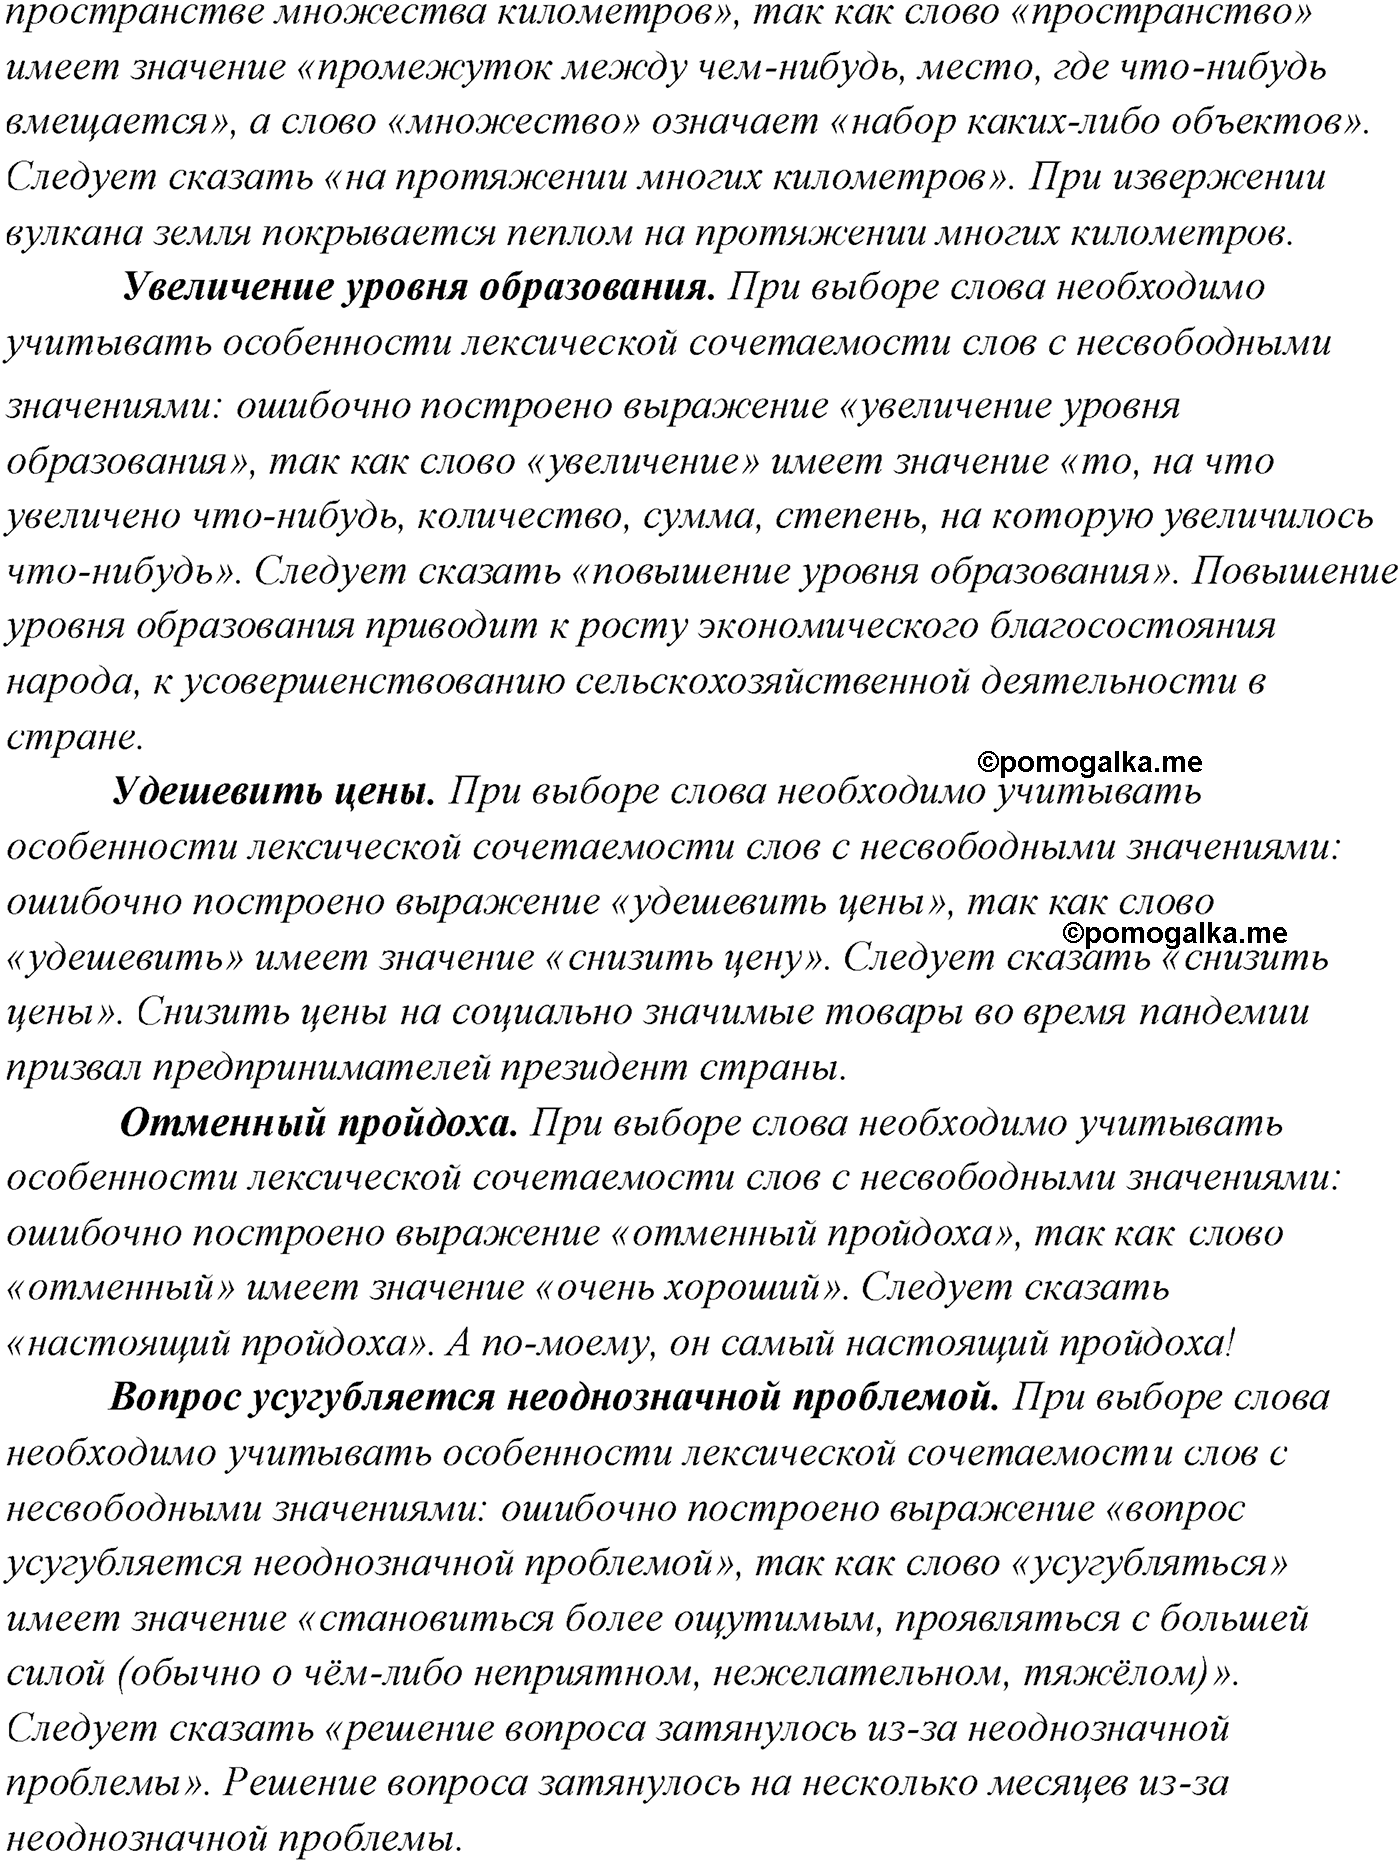 упражнение №143 русский язык 10 класс Гусарова 2021 год